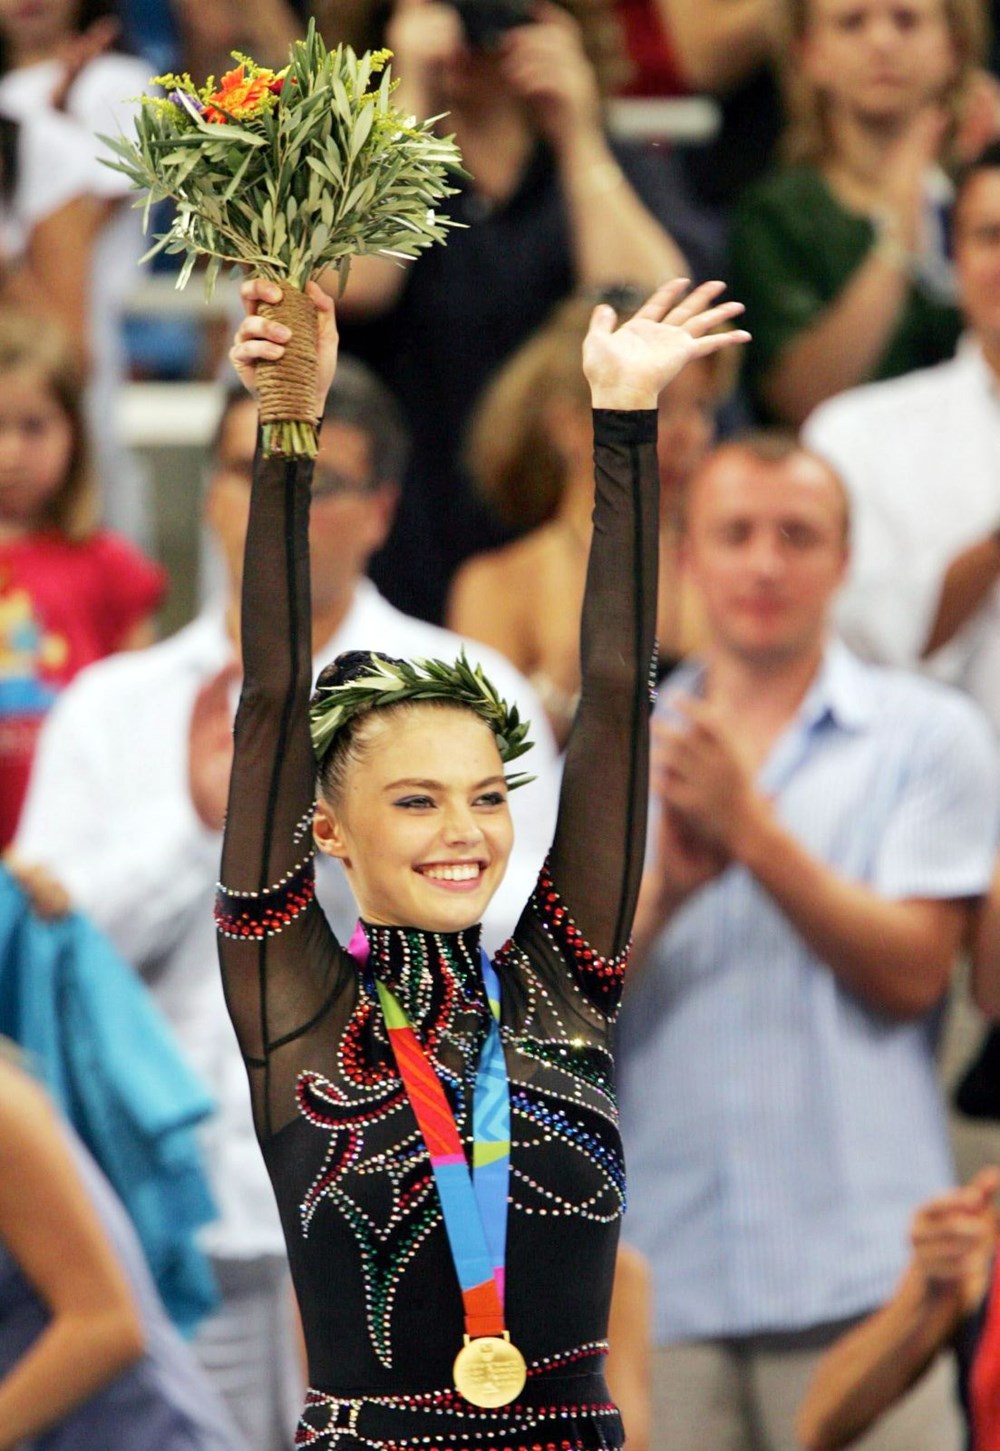 Vladimir Putin'den ikizleri olduğu iddia edilen eski jimnastikçi Alina
Kabaeva ortadan kayboldu - 6